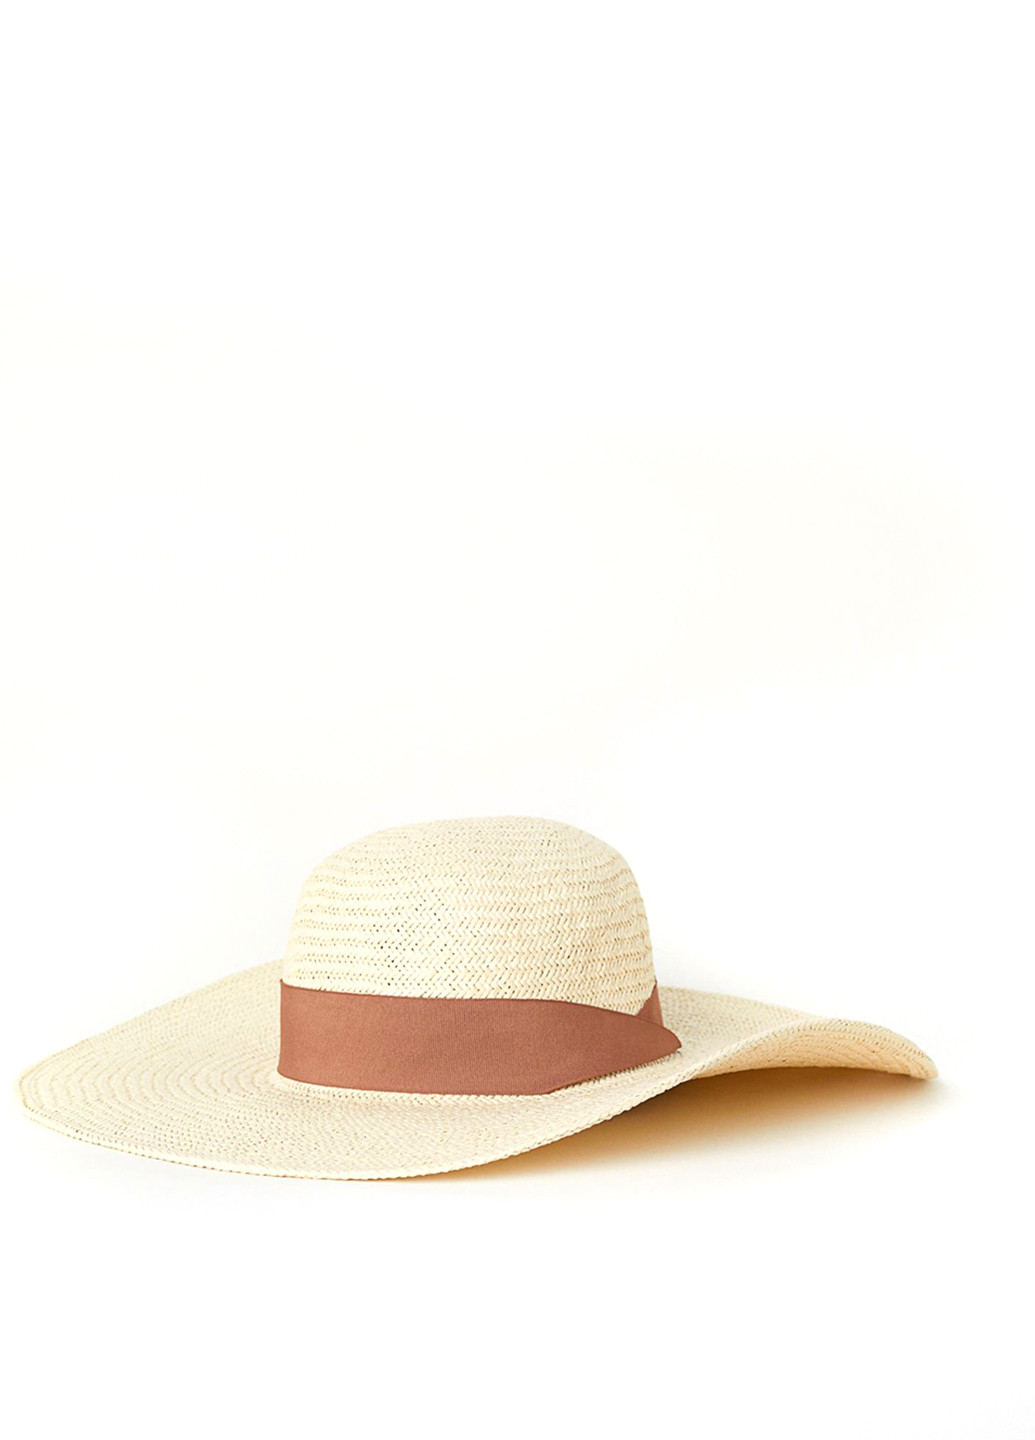 Шляпа H&M широкополая однотонная бежевая пляжная искусственная солома